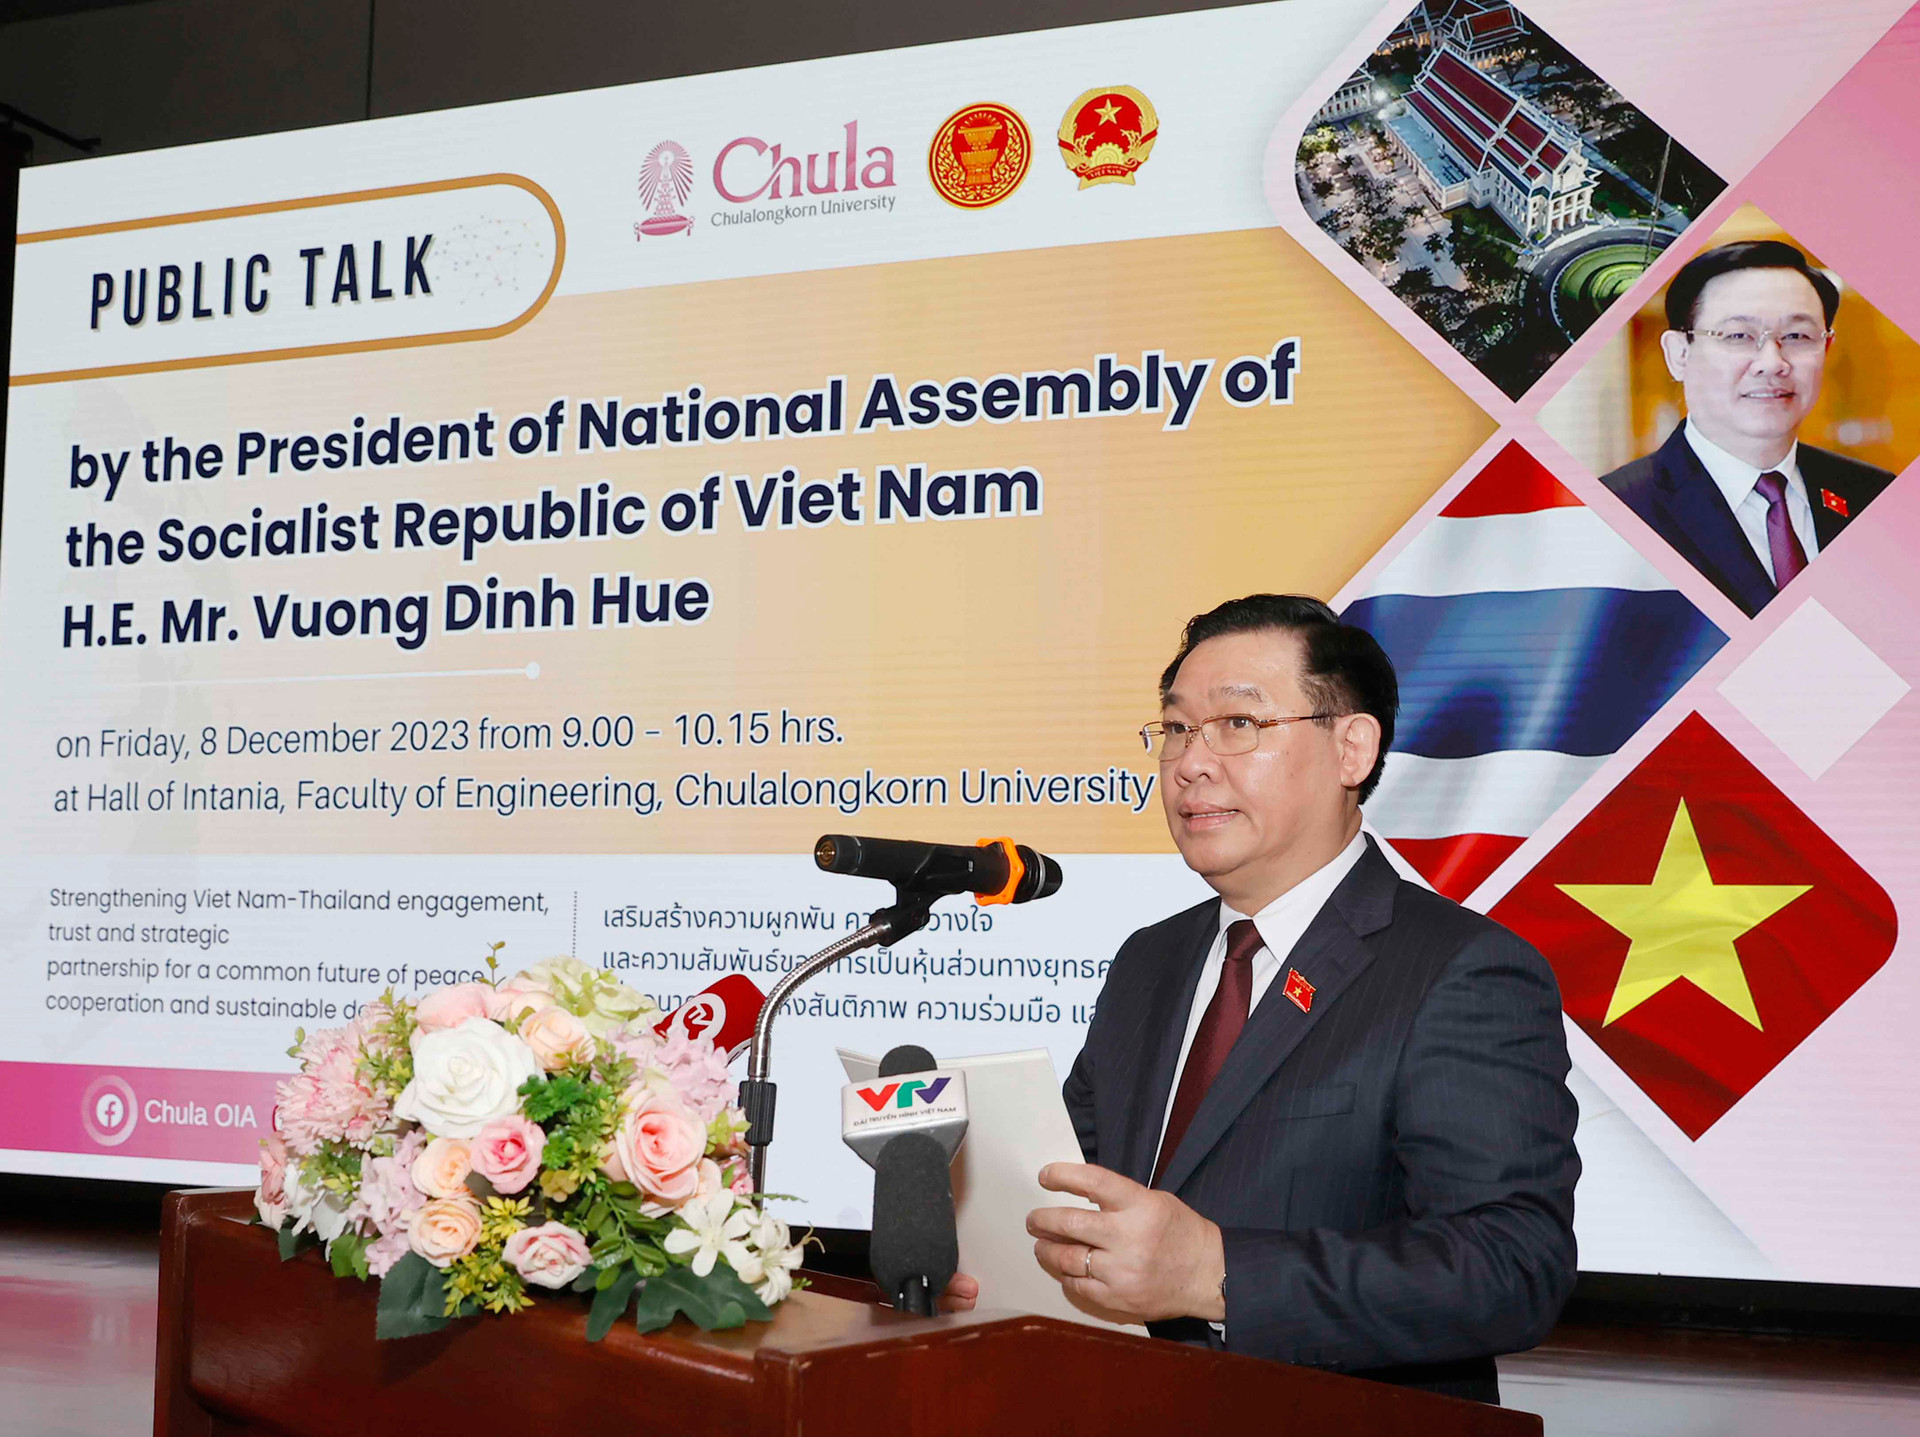 Chủ tịch Quốc hội Vương Đình Huệ: Quan hệ Việt Nam - Thái Lan ngày càng đơm hoa kết trái vì một tương lai an bình, hạnh phúc và thịnh vượng -0